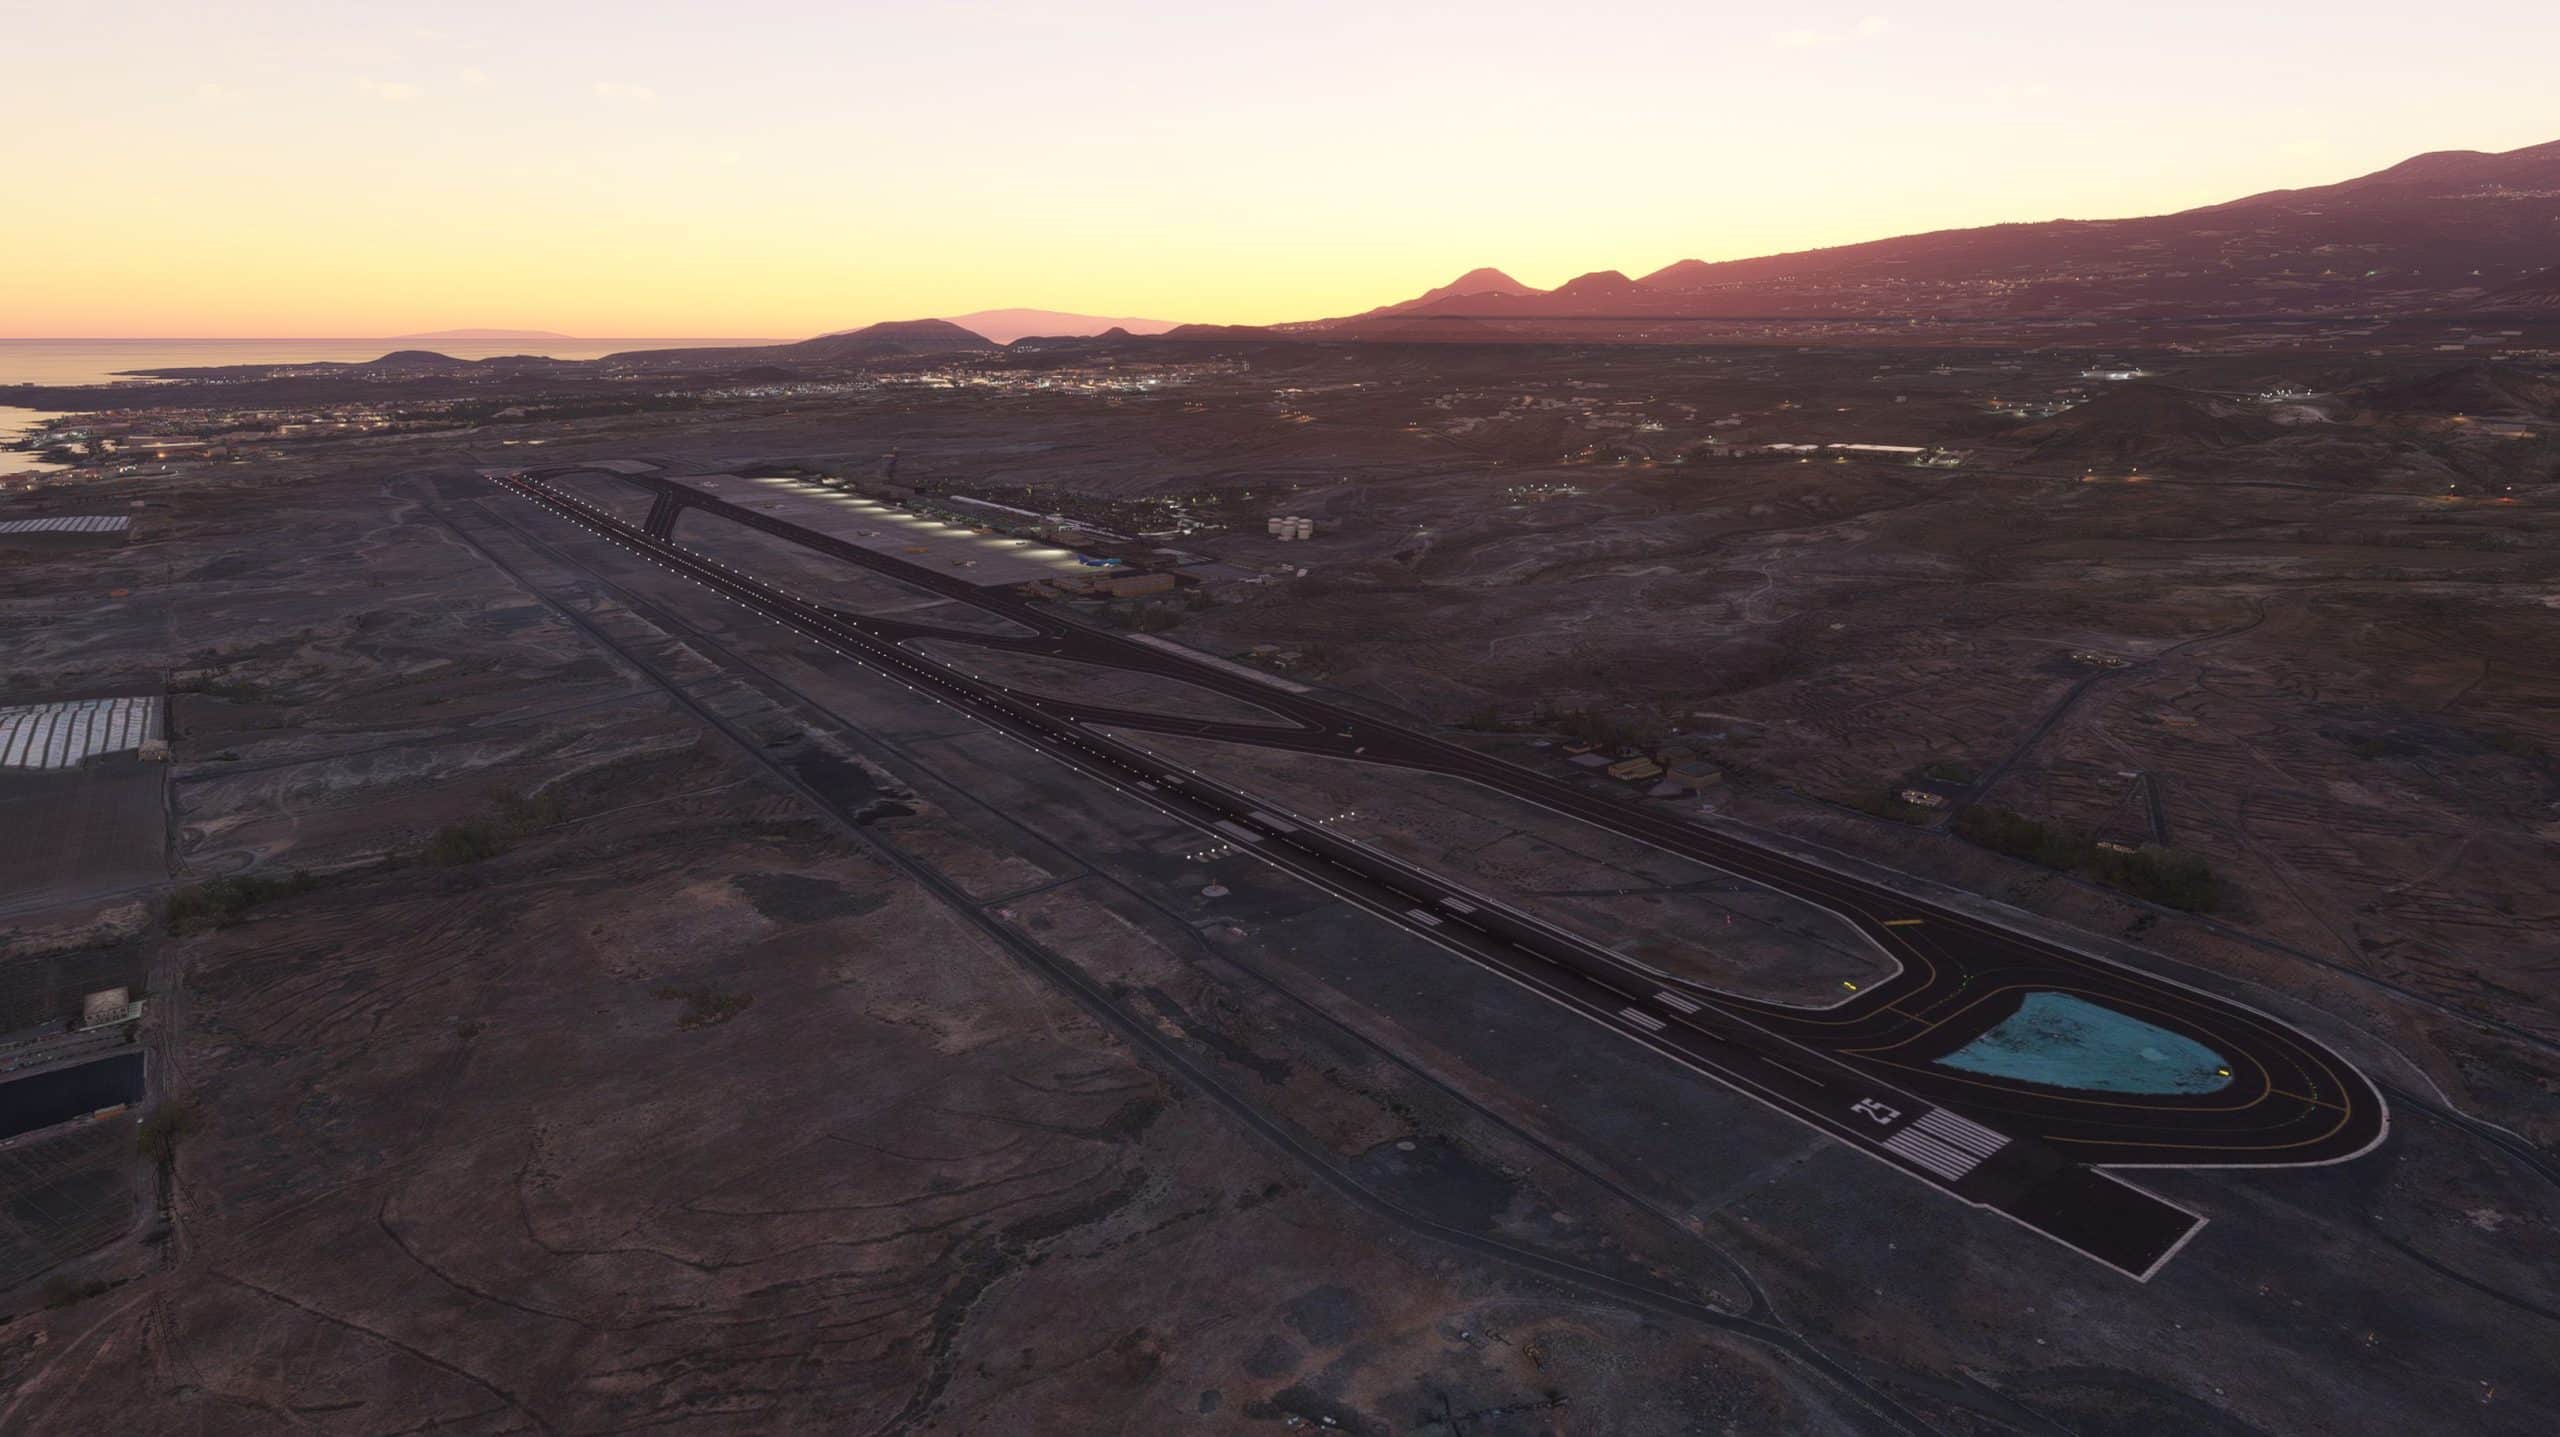 MK-Studios Releases Tenerife Airports for MSFS - MK-Studios, Microsoft Flight Simulator